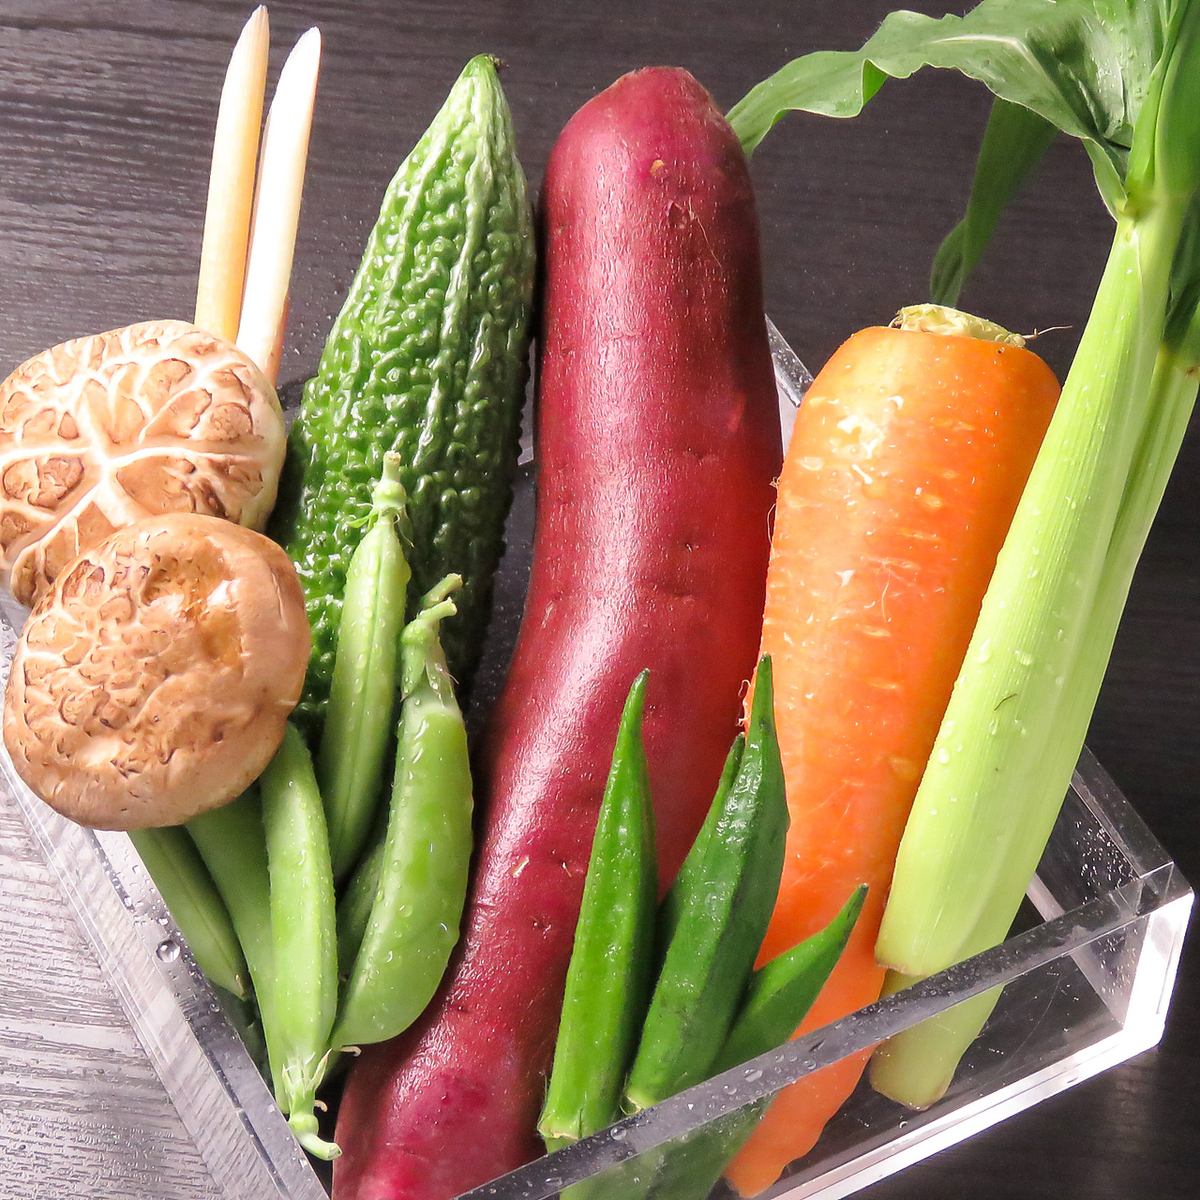 每天早上从名古屋市场采购的蔬菜都非常新鲜！